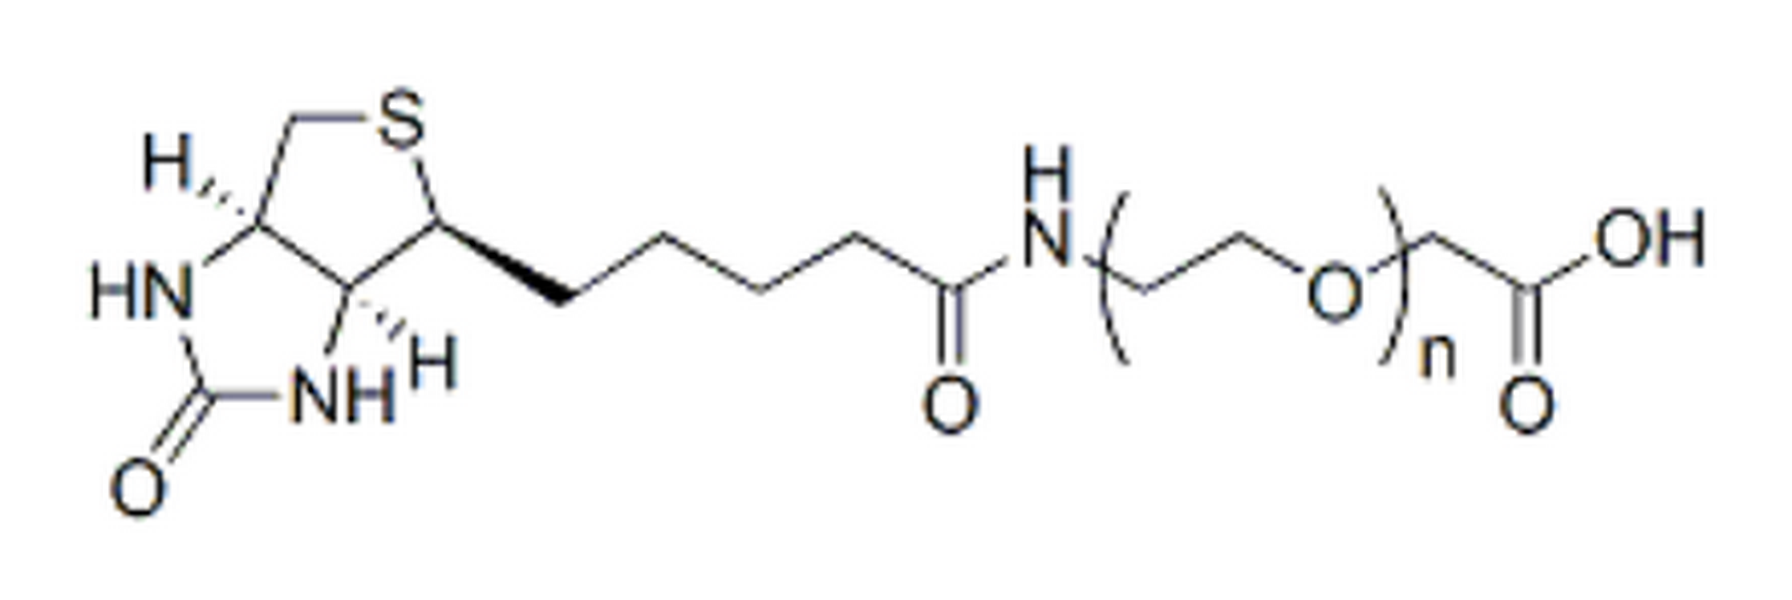 Biotin-PEG-CH2CO2H, MW 2K